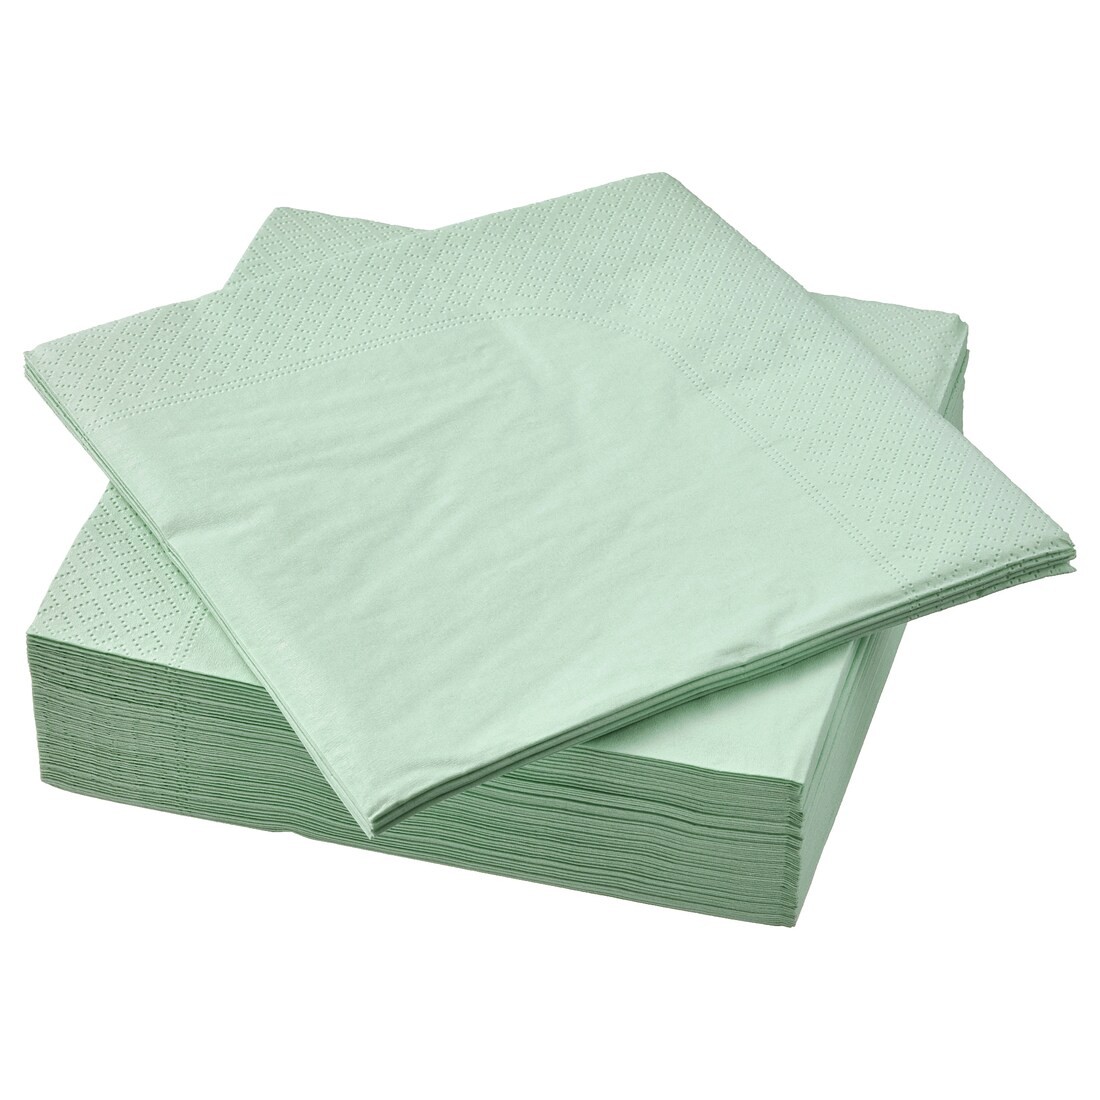 IKEA FANTASTISK Салфетки бумажные, бледно-зеленый, 33x33 см 80564670 805.646.70